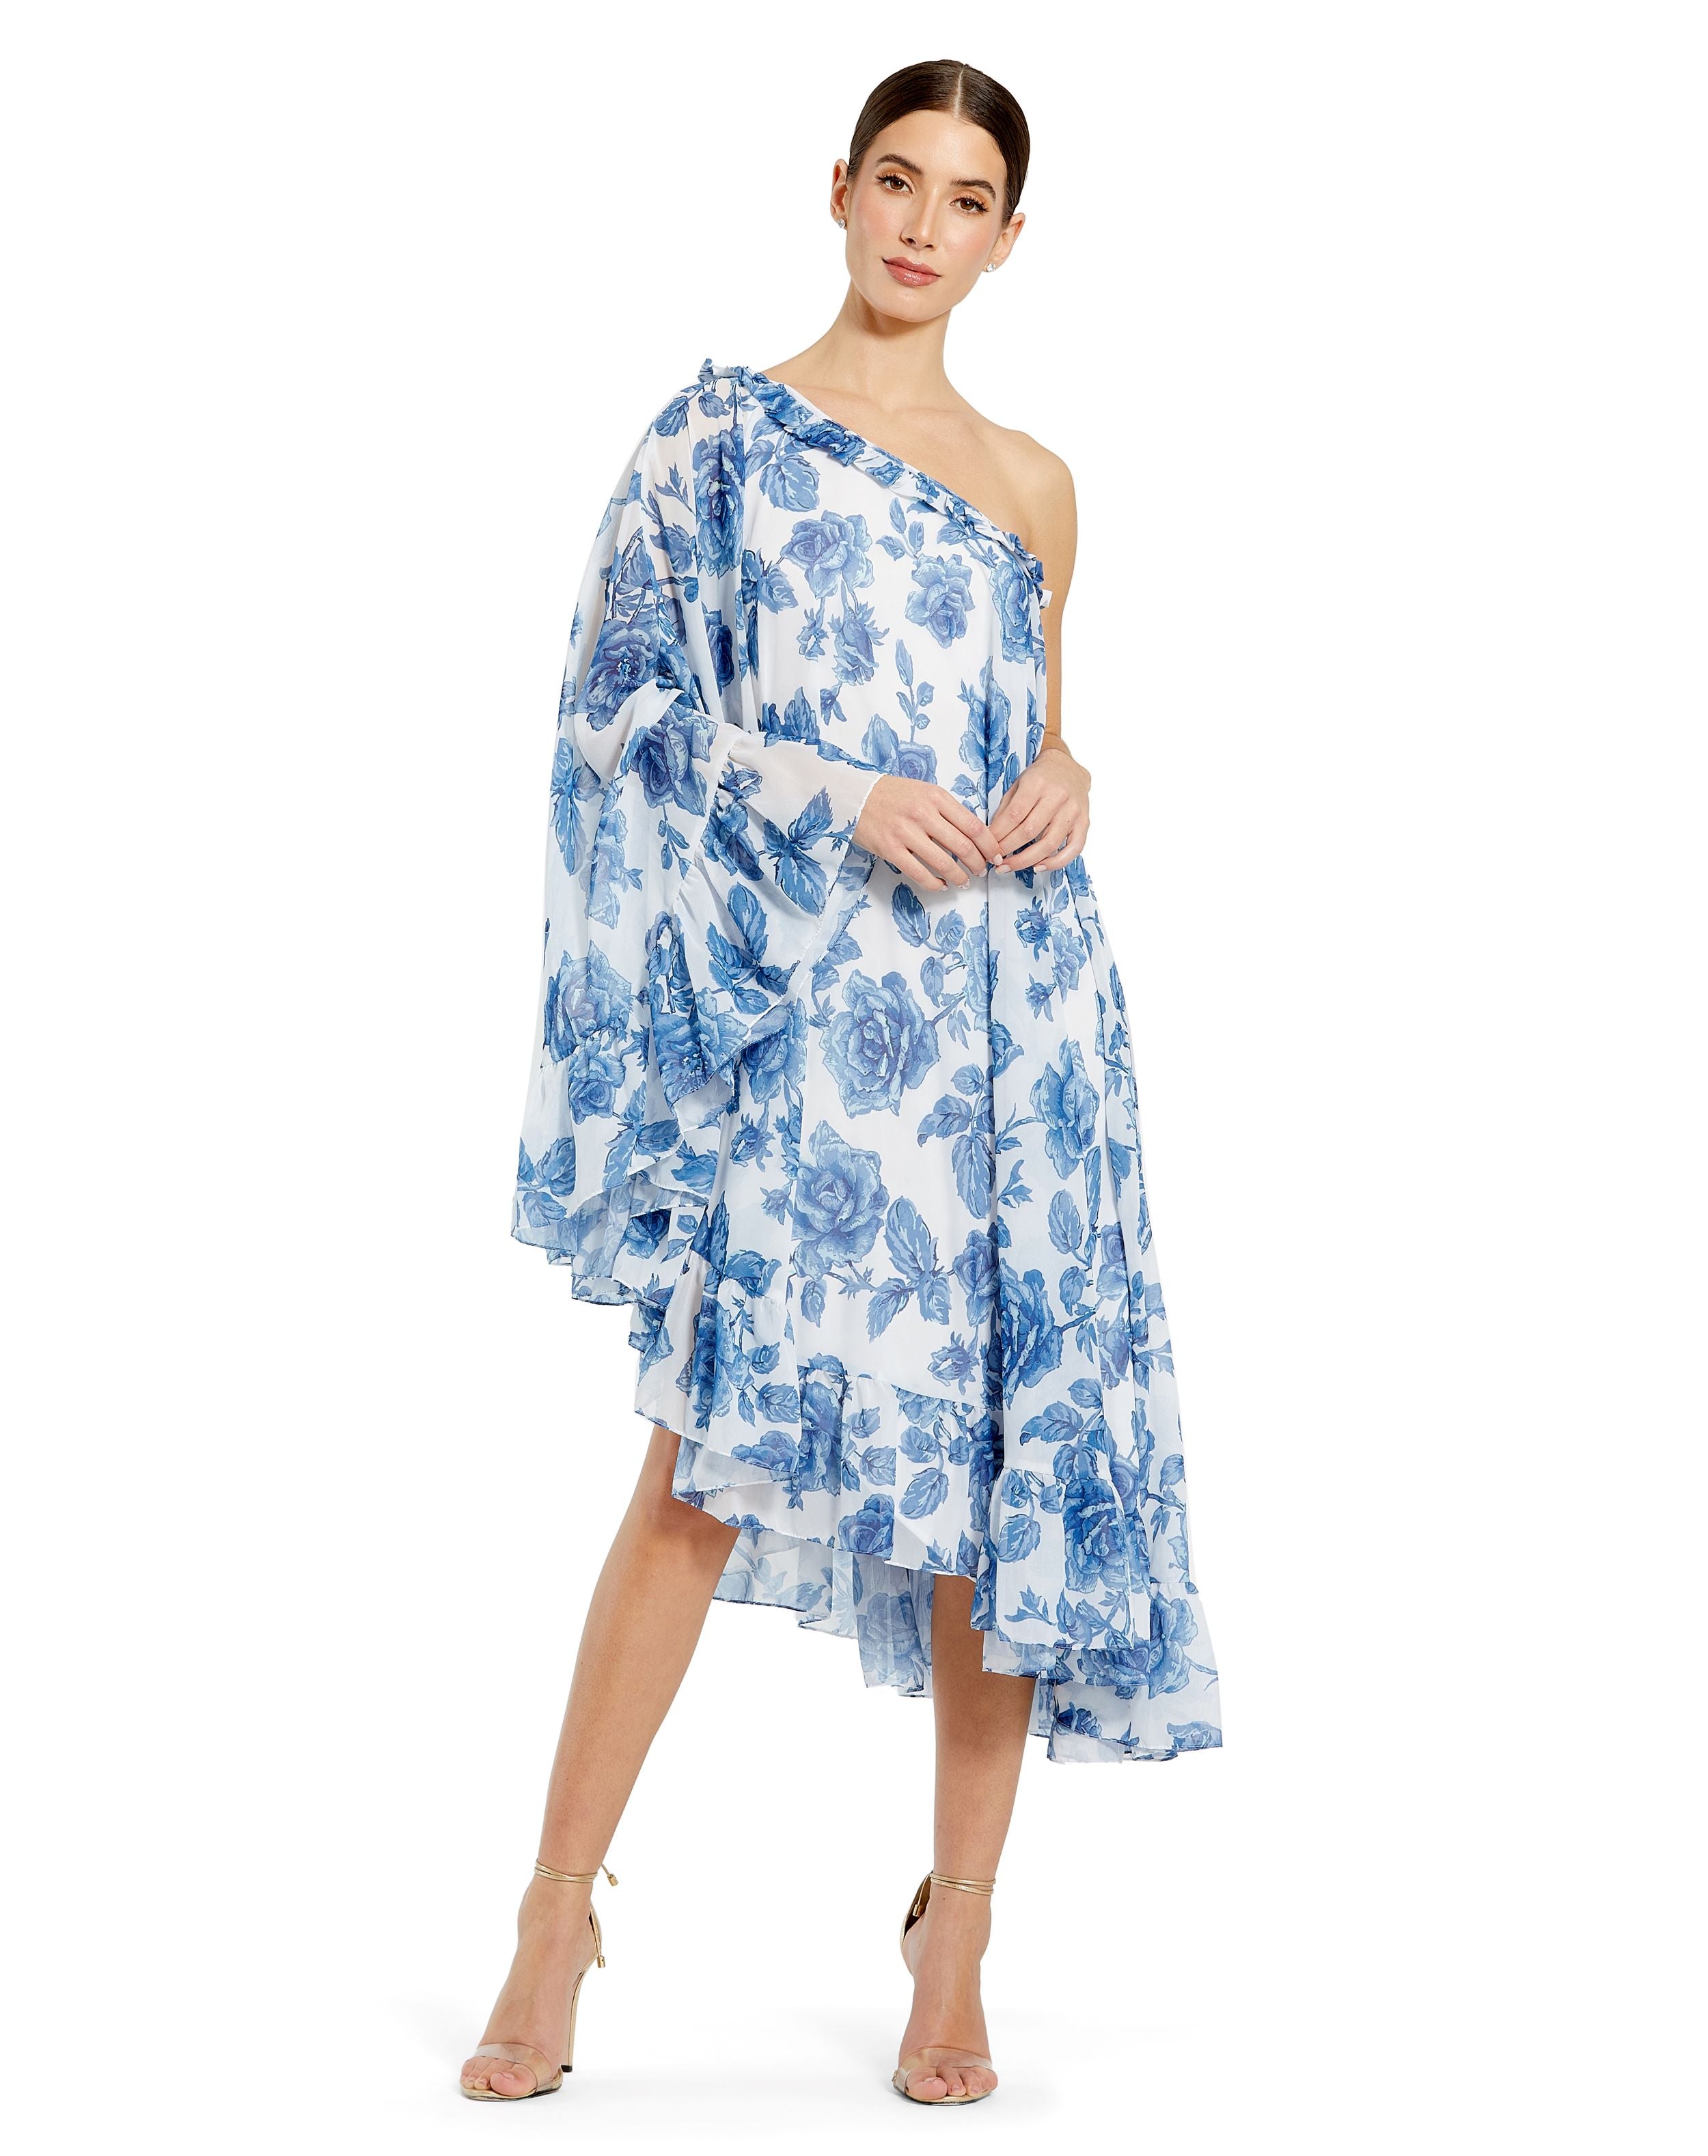 Floral Print One Shoulder Cape Dress – Mac Duggal